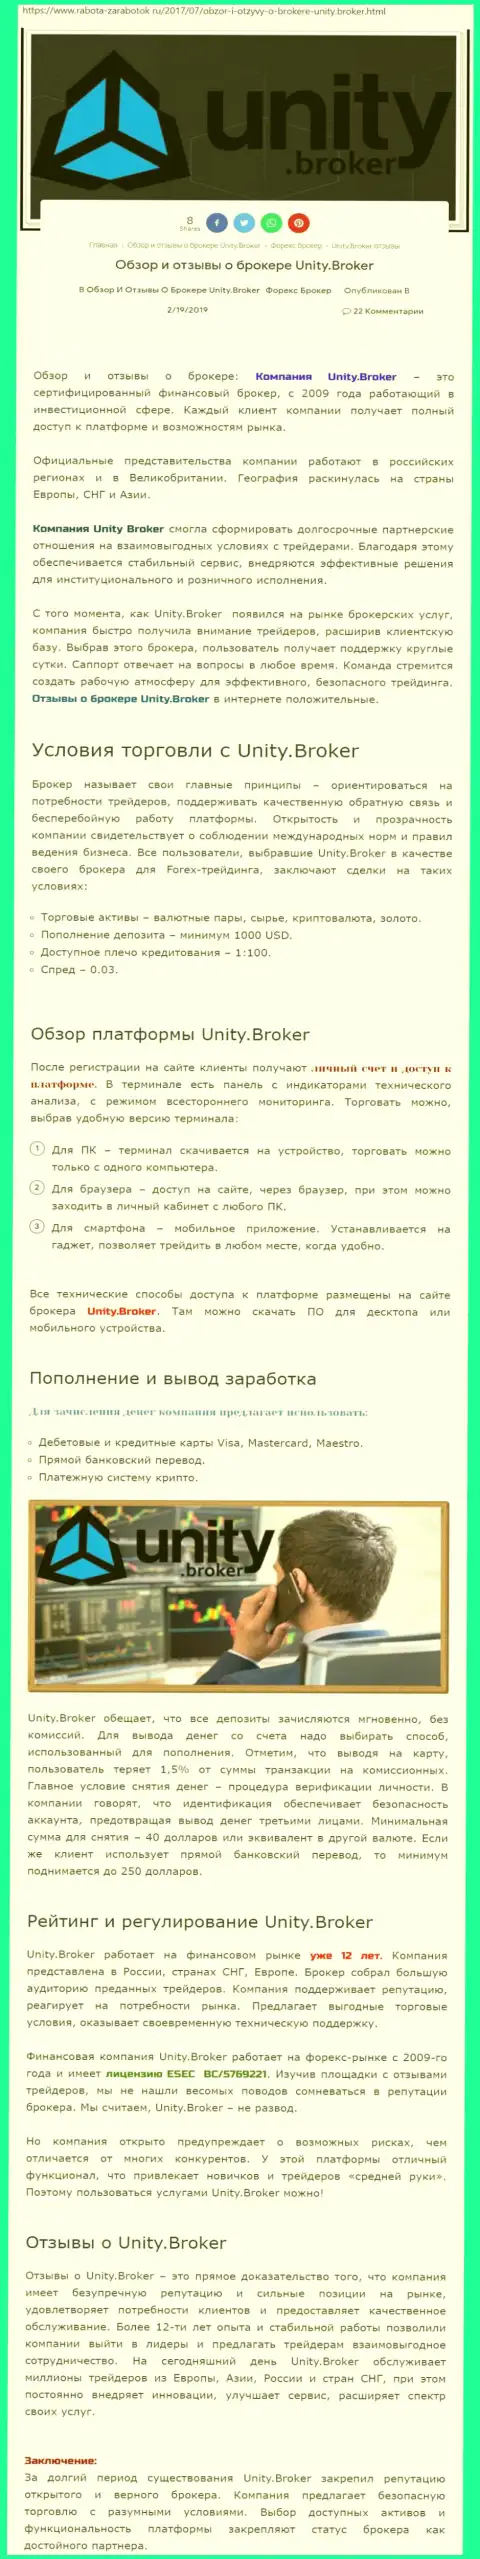 Обзорная информация ФОРЕКС компании Unity Broker на онлайн-ресурсе работа заработок ру